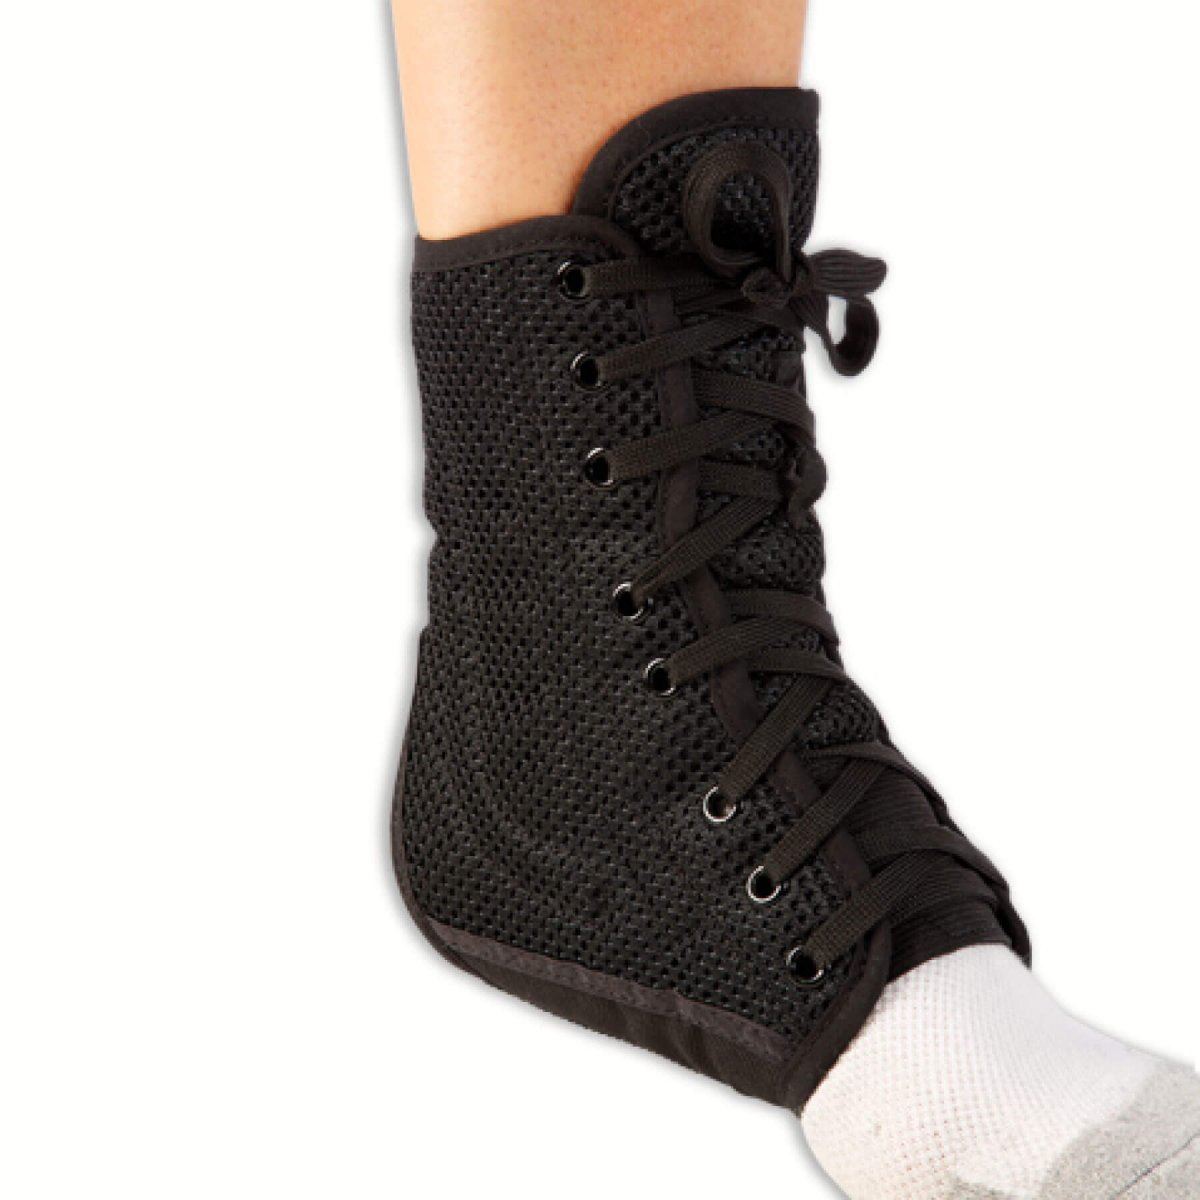 Breg Lace-up Ankle Brace - Banff Sport Medicine